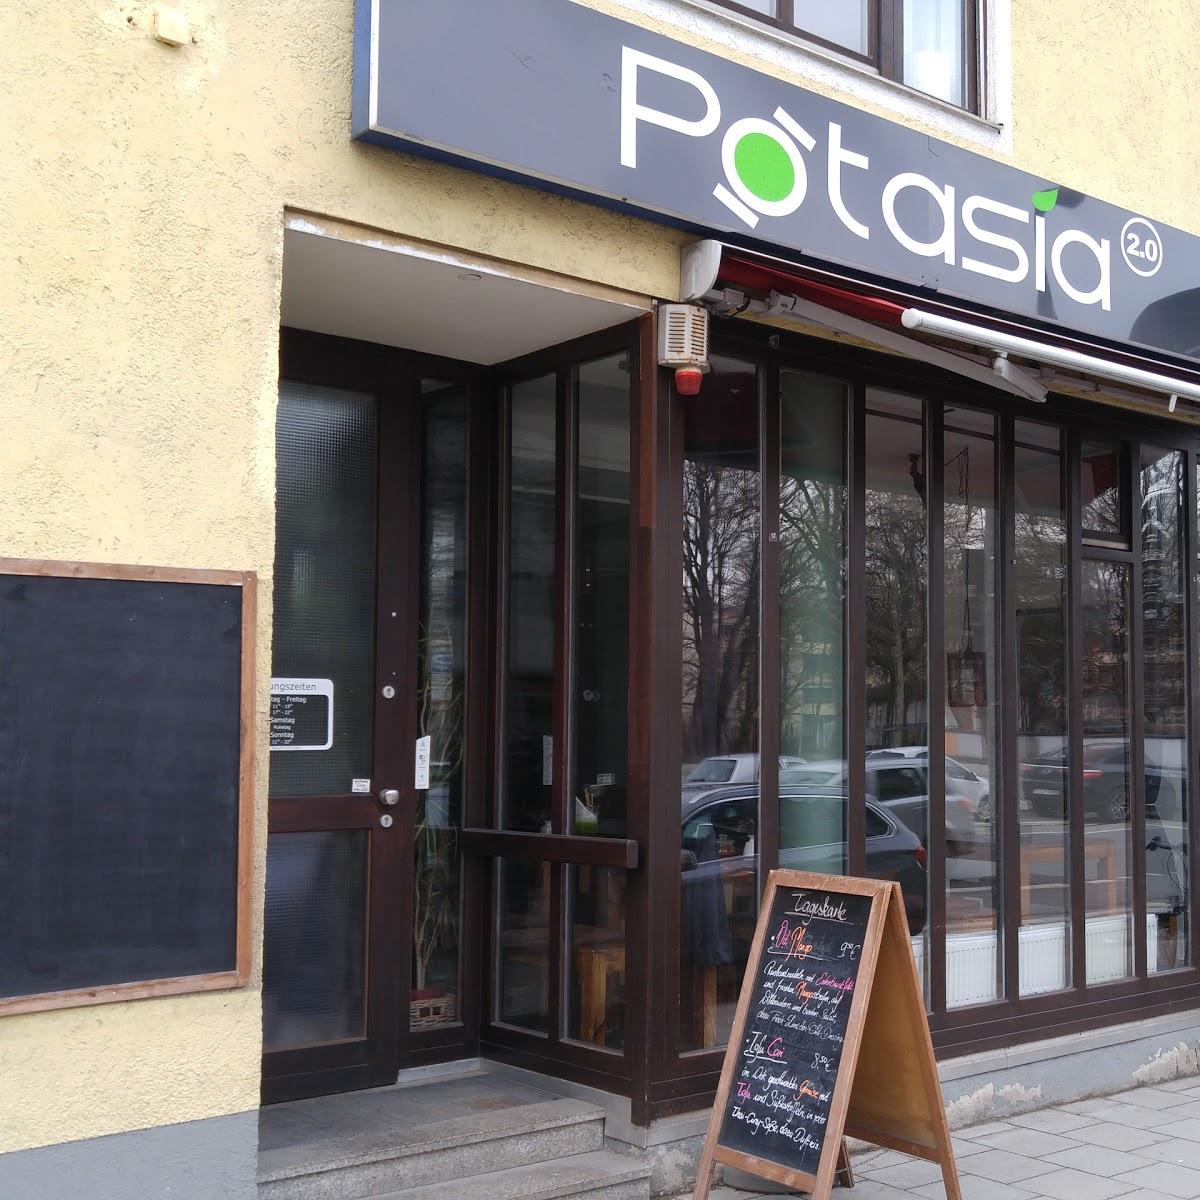 Restaurant "Potasia 2.0" in München